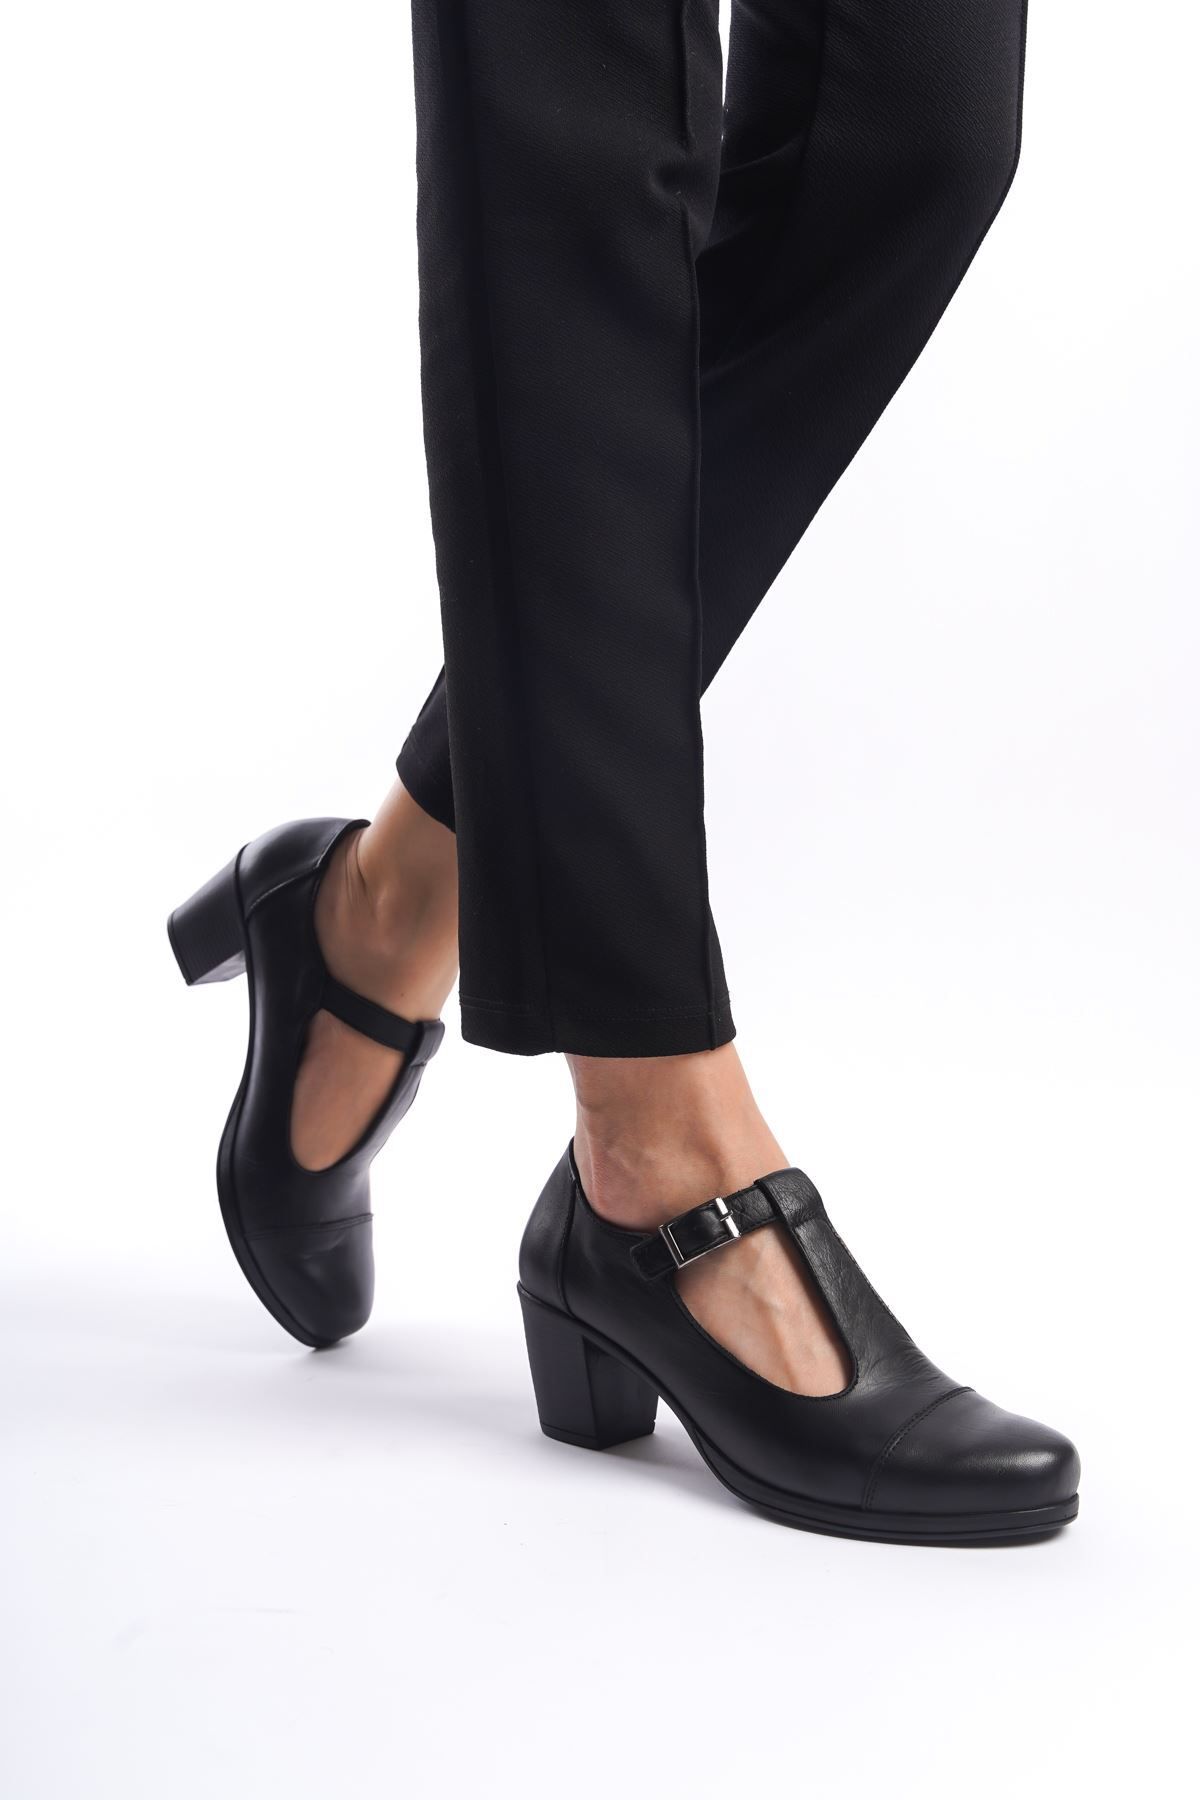 Tamdabu Ayakkabı Hakiki Deri Anatomik Taban Comfort Siyah Kadın Ayakkabı Tmd202460